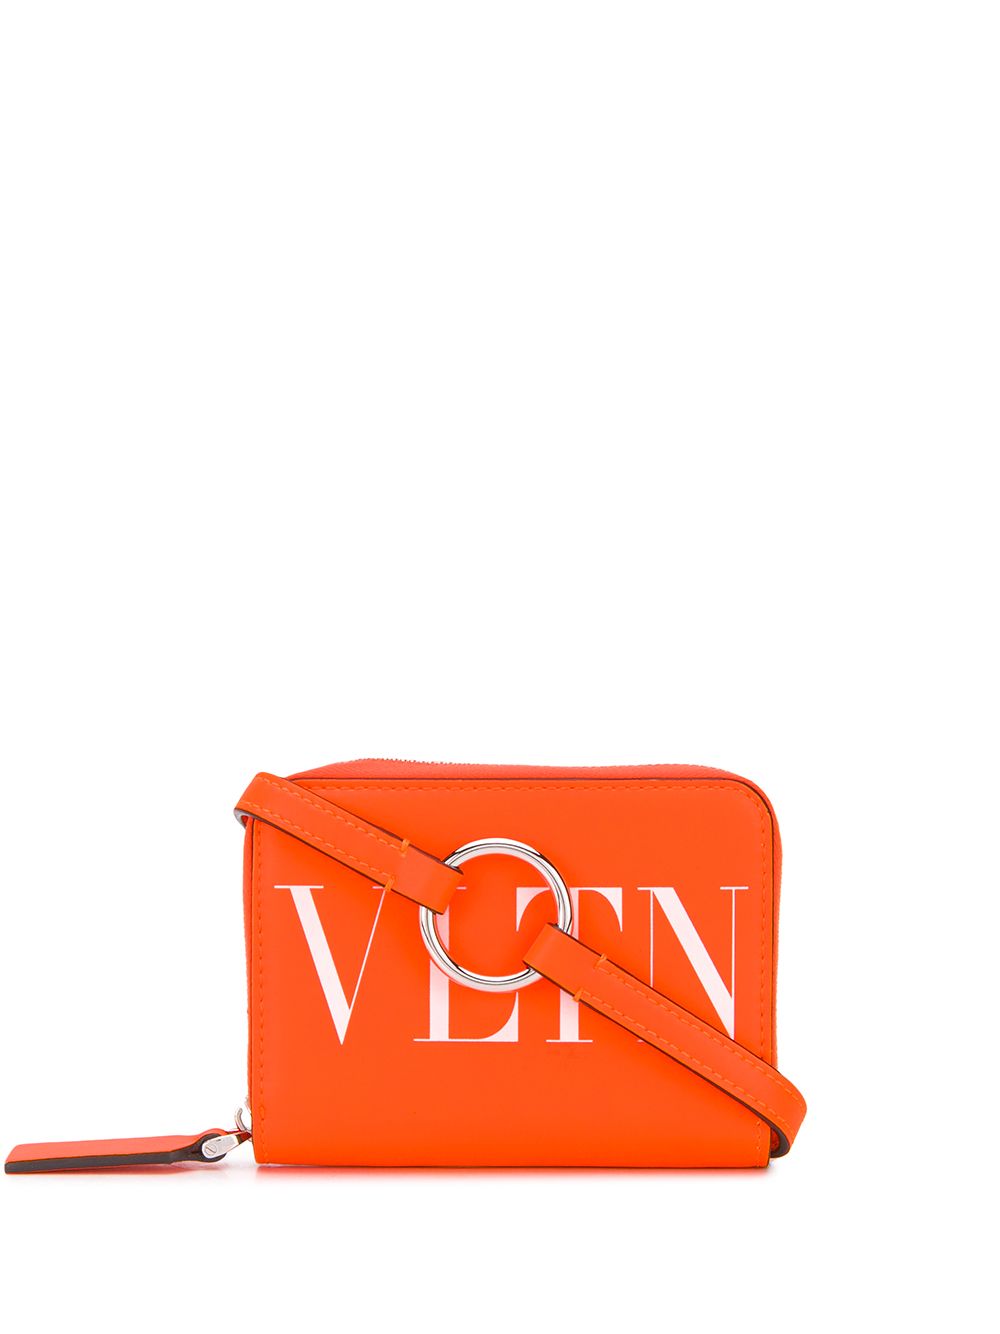 фото Valentino garavani кошелек с логотипом vltn